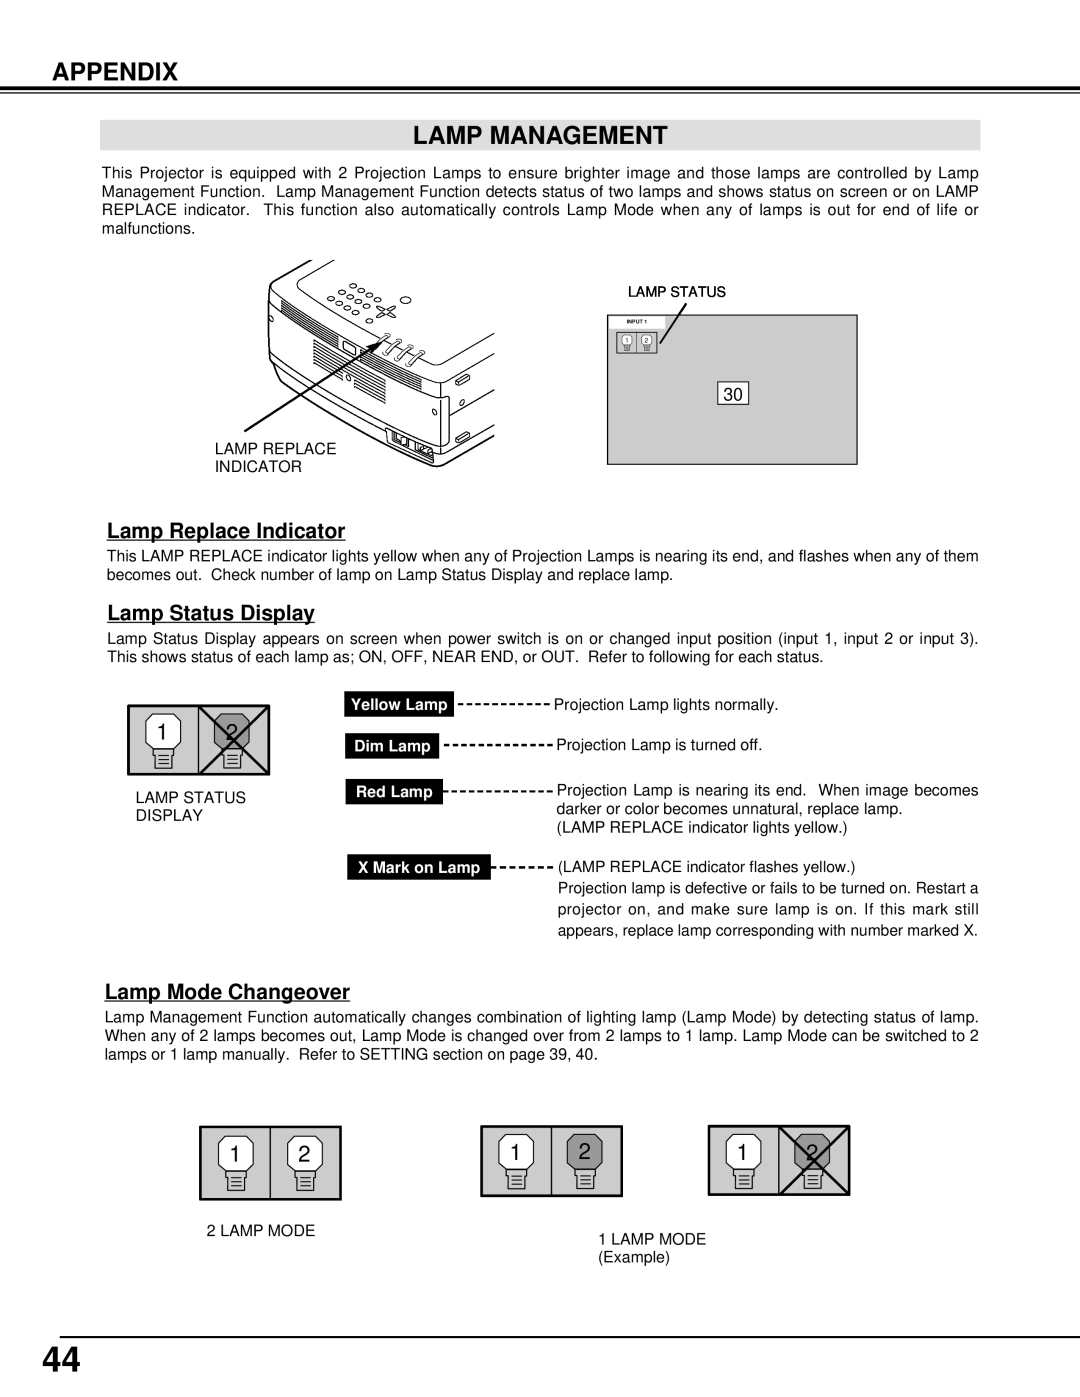 Christie Digital Systems 38-VIV301-01 user manual Appendix Lamp Management, Lamp Replace Indicator, Lamp Status Display 